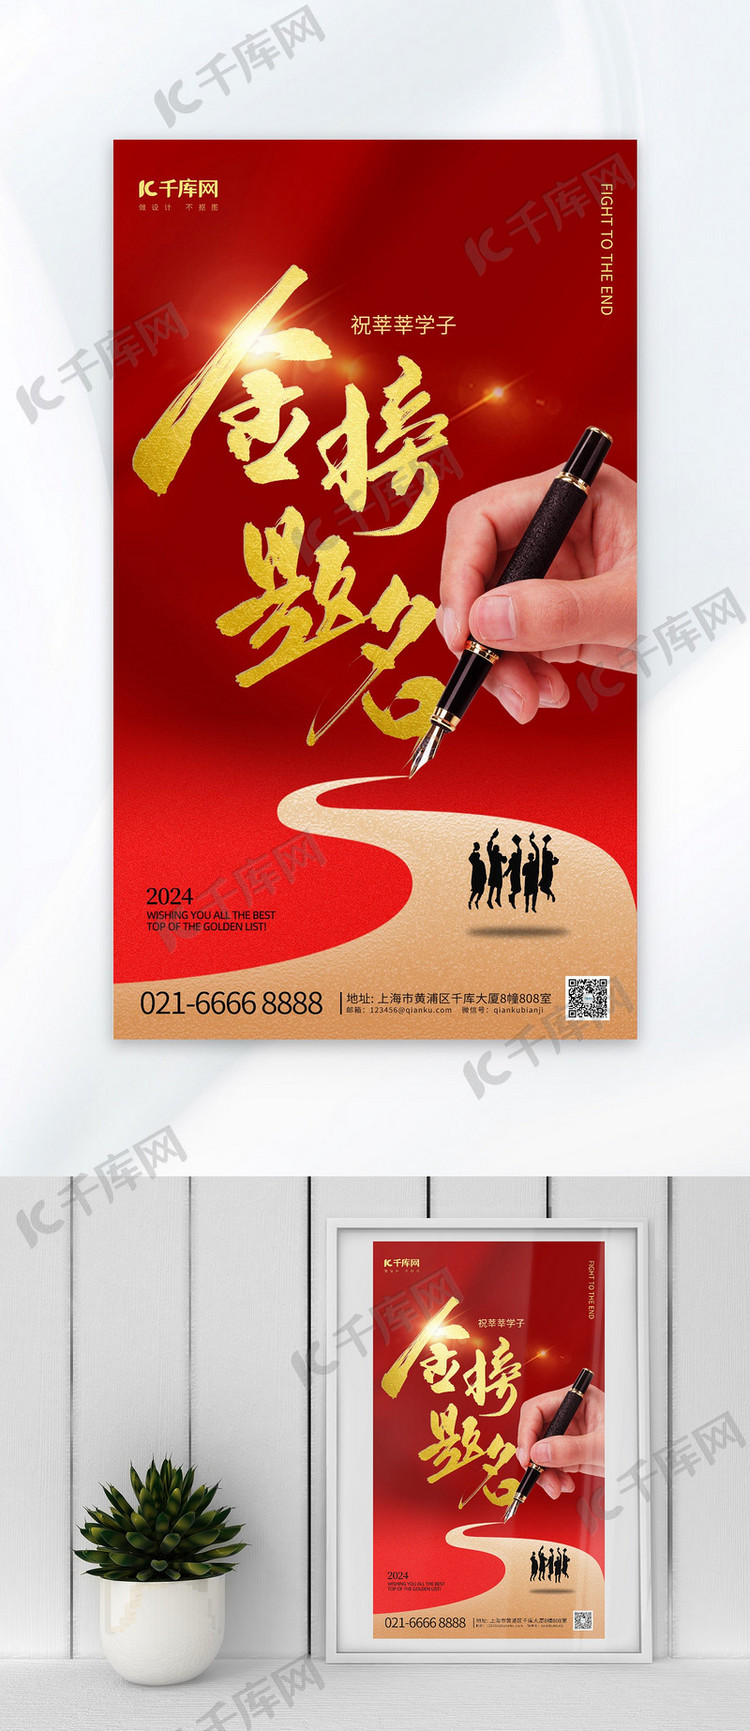 高考金榜题名钢笔红色简约大气海报宣传海报设计